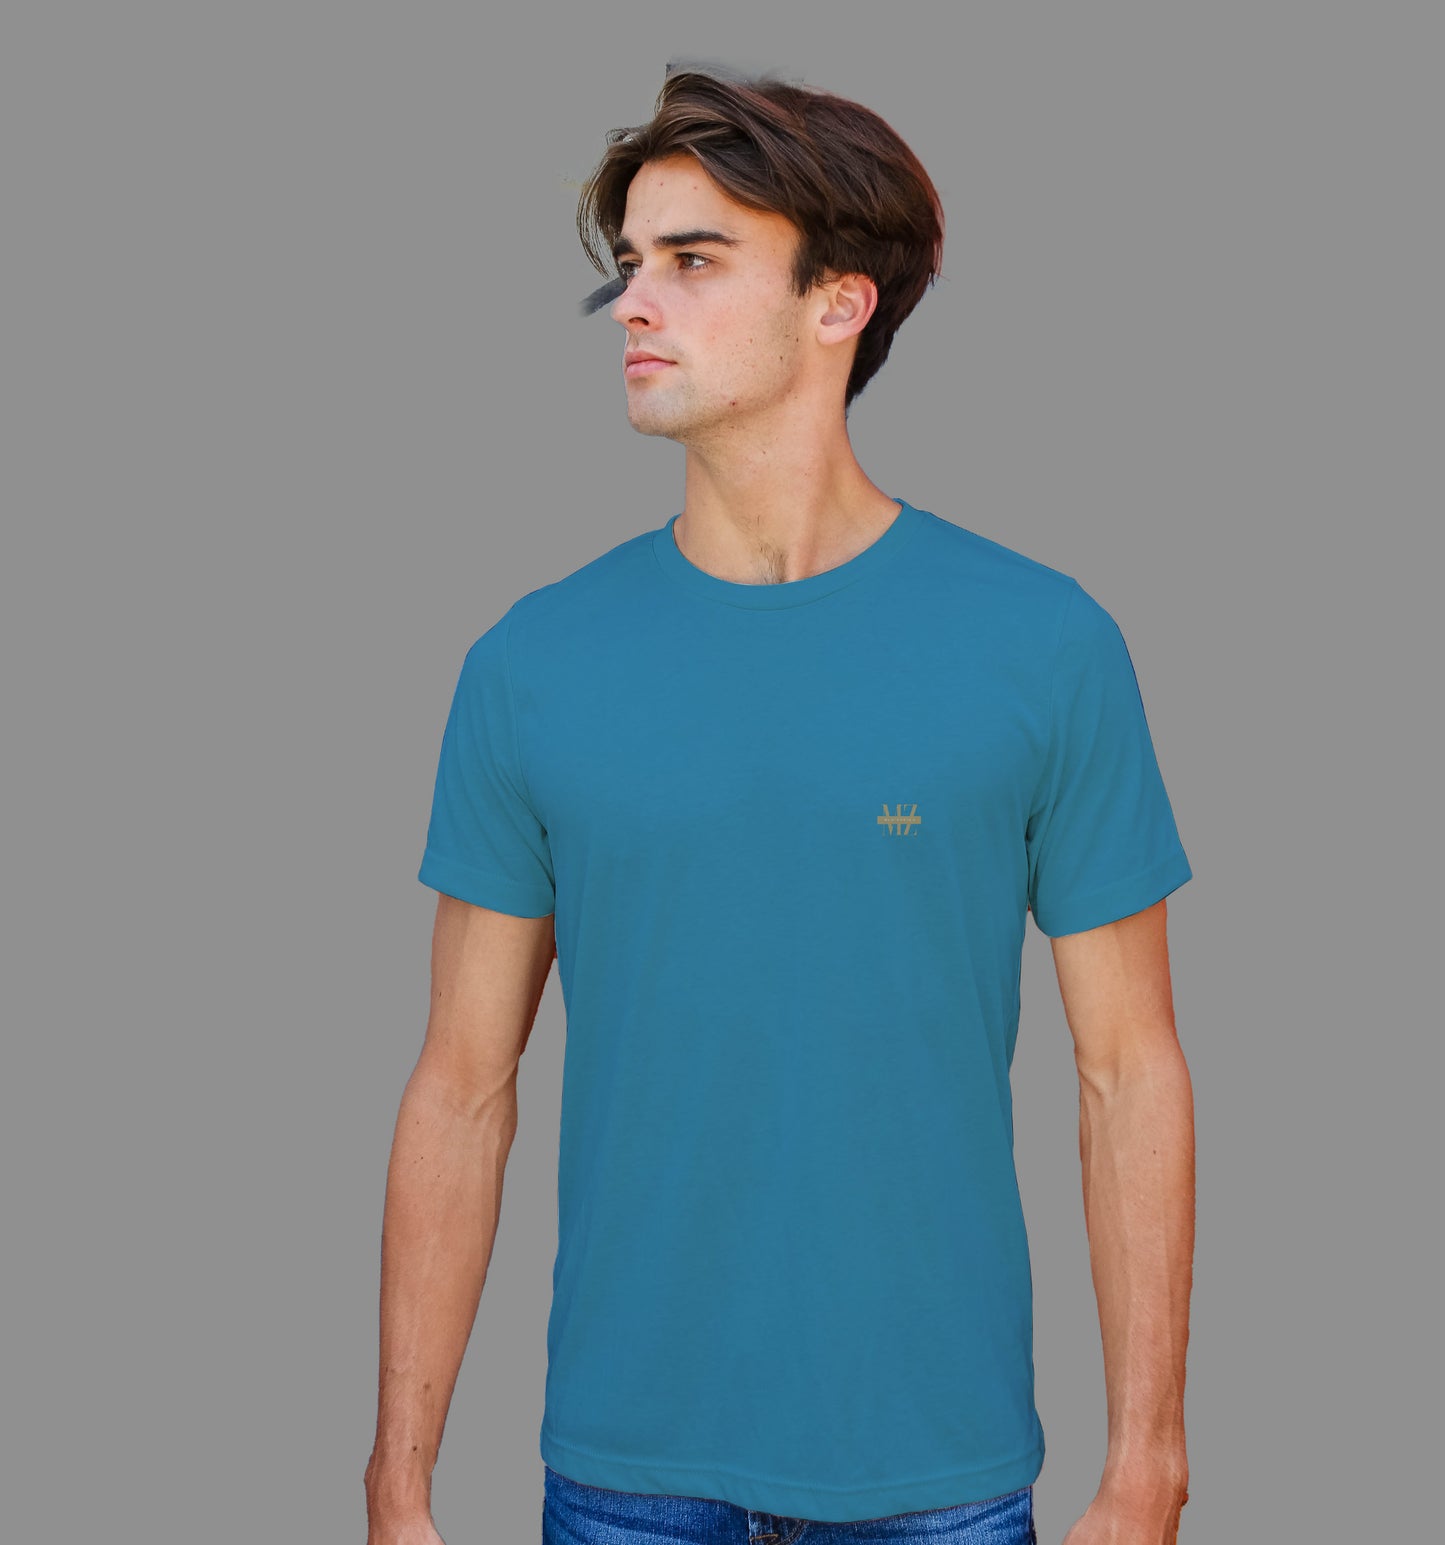 Steel Blue T-Shirt In Plain - Mon Zurich Originals